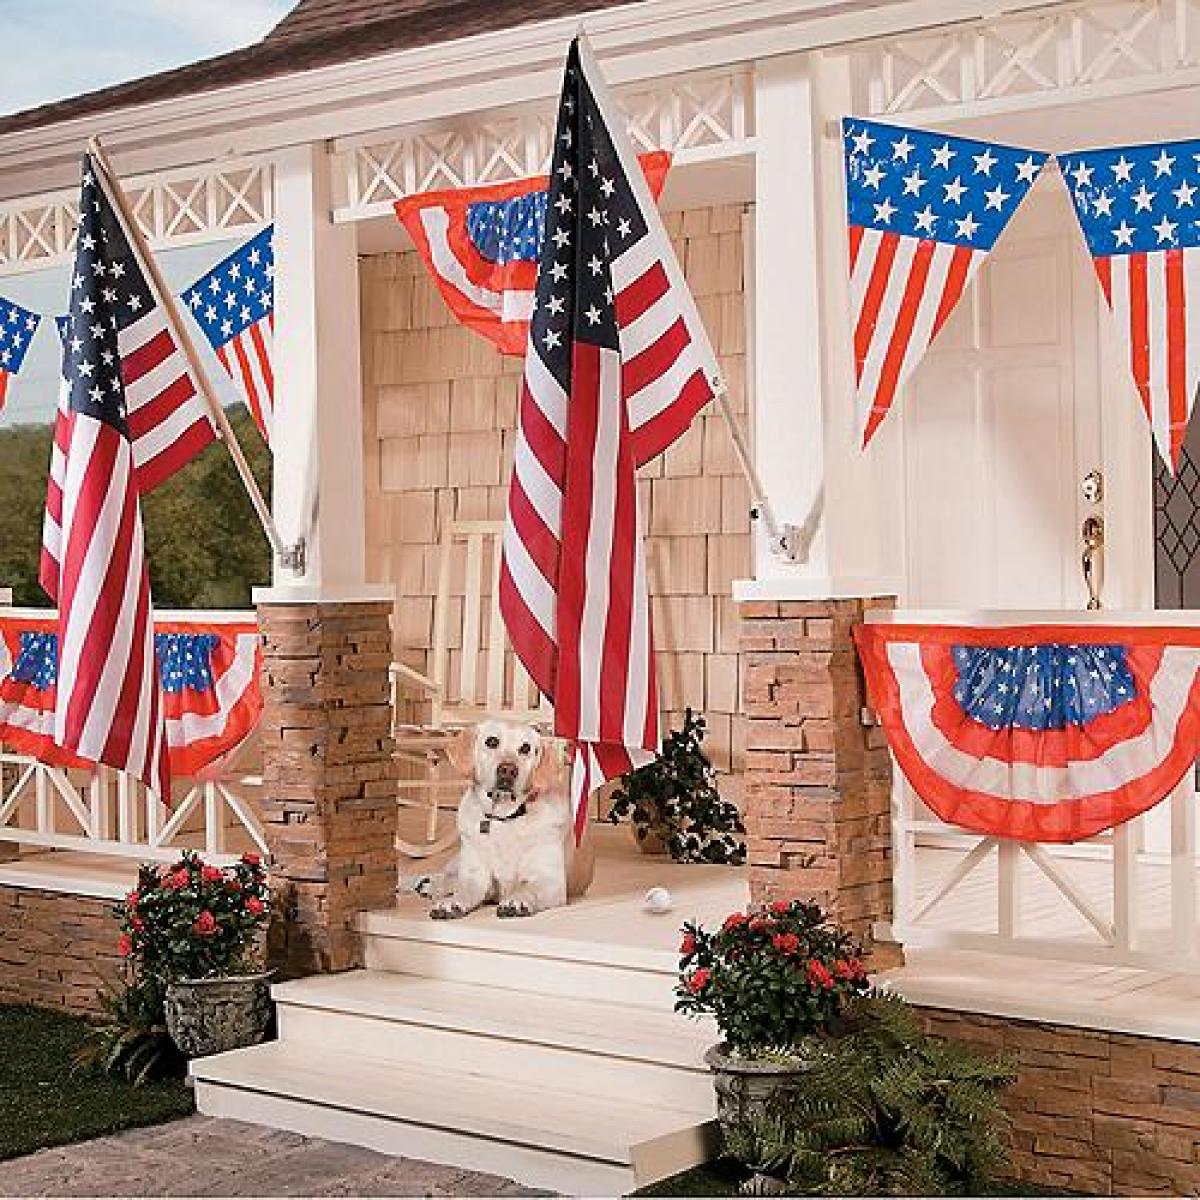 Những mẫu trang trí nhà cửa cho lễ Quốc khánh Mỹ ngày 4 tháng 7 năm này là gì?